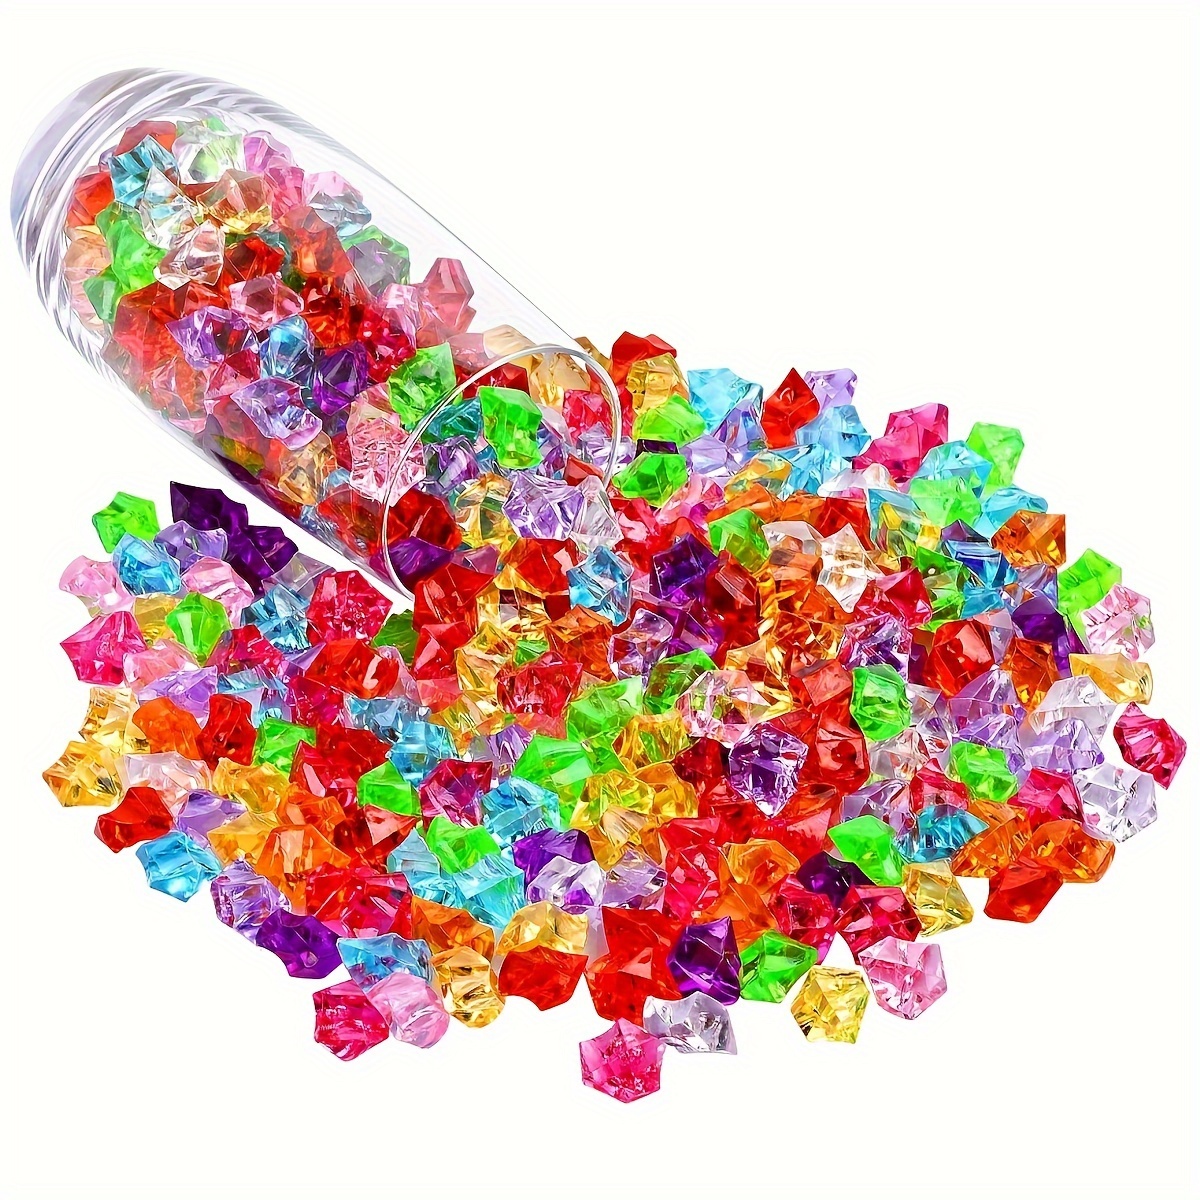 Piedras de hielo trituradas falsas, 250 piezas de cristales falsos de  plástico transparente gemas acrílicas para rellenos de jarrones, dispersión  de